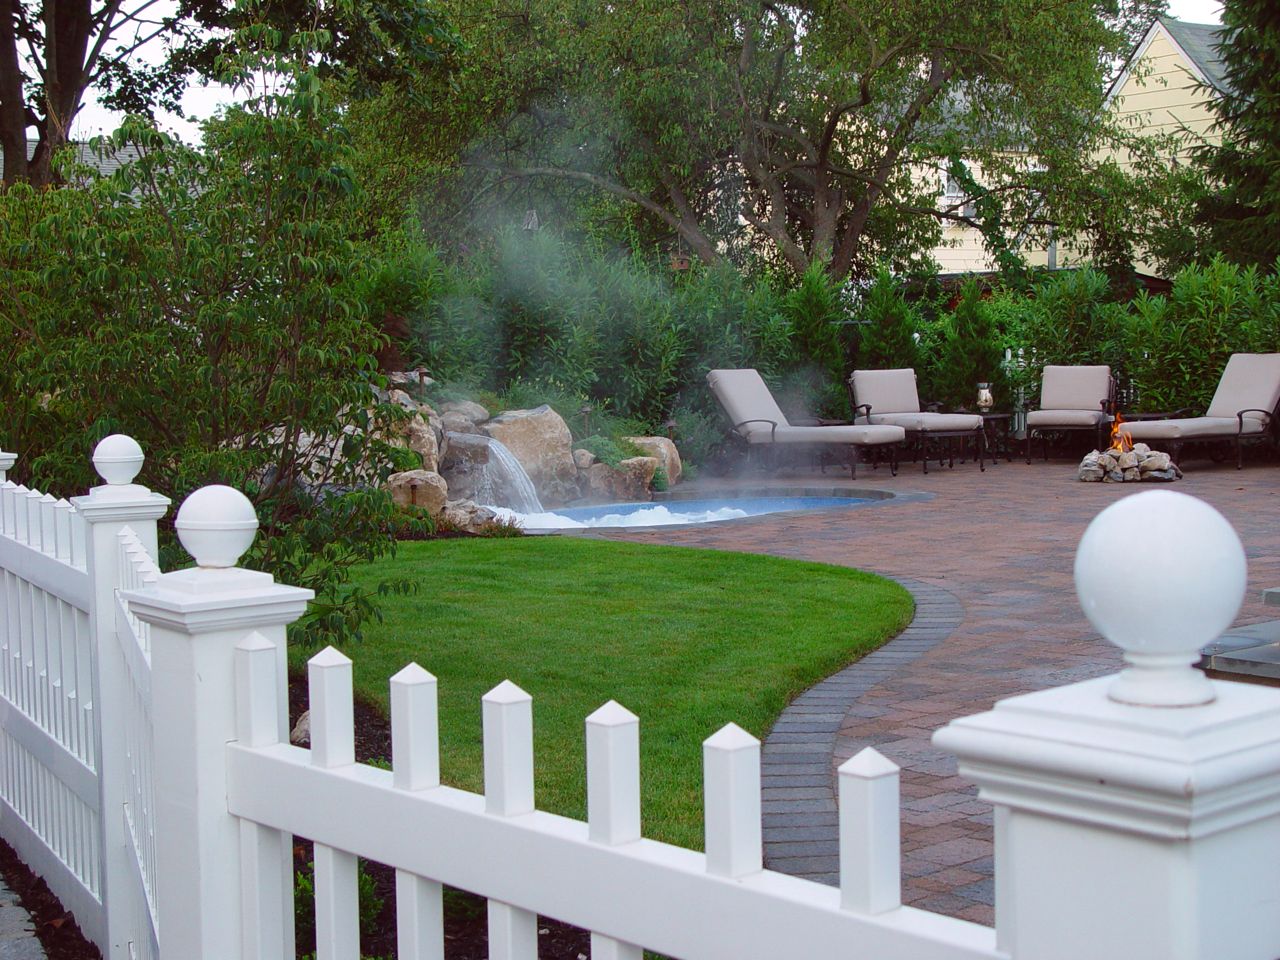 Pool/Spa Combo for Small Backyard: